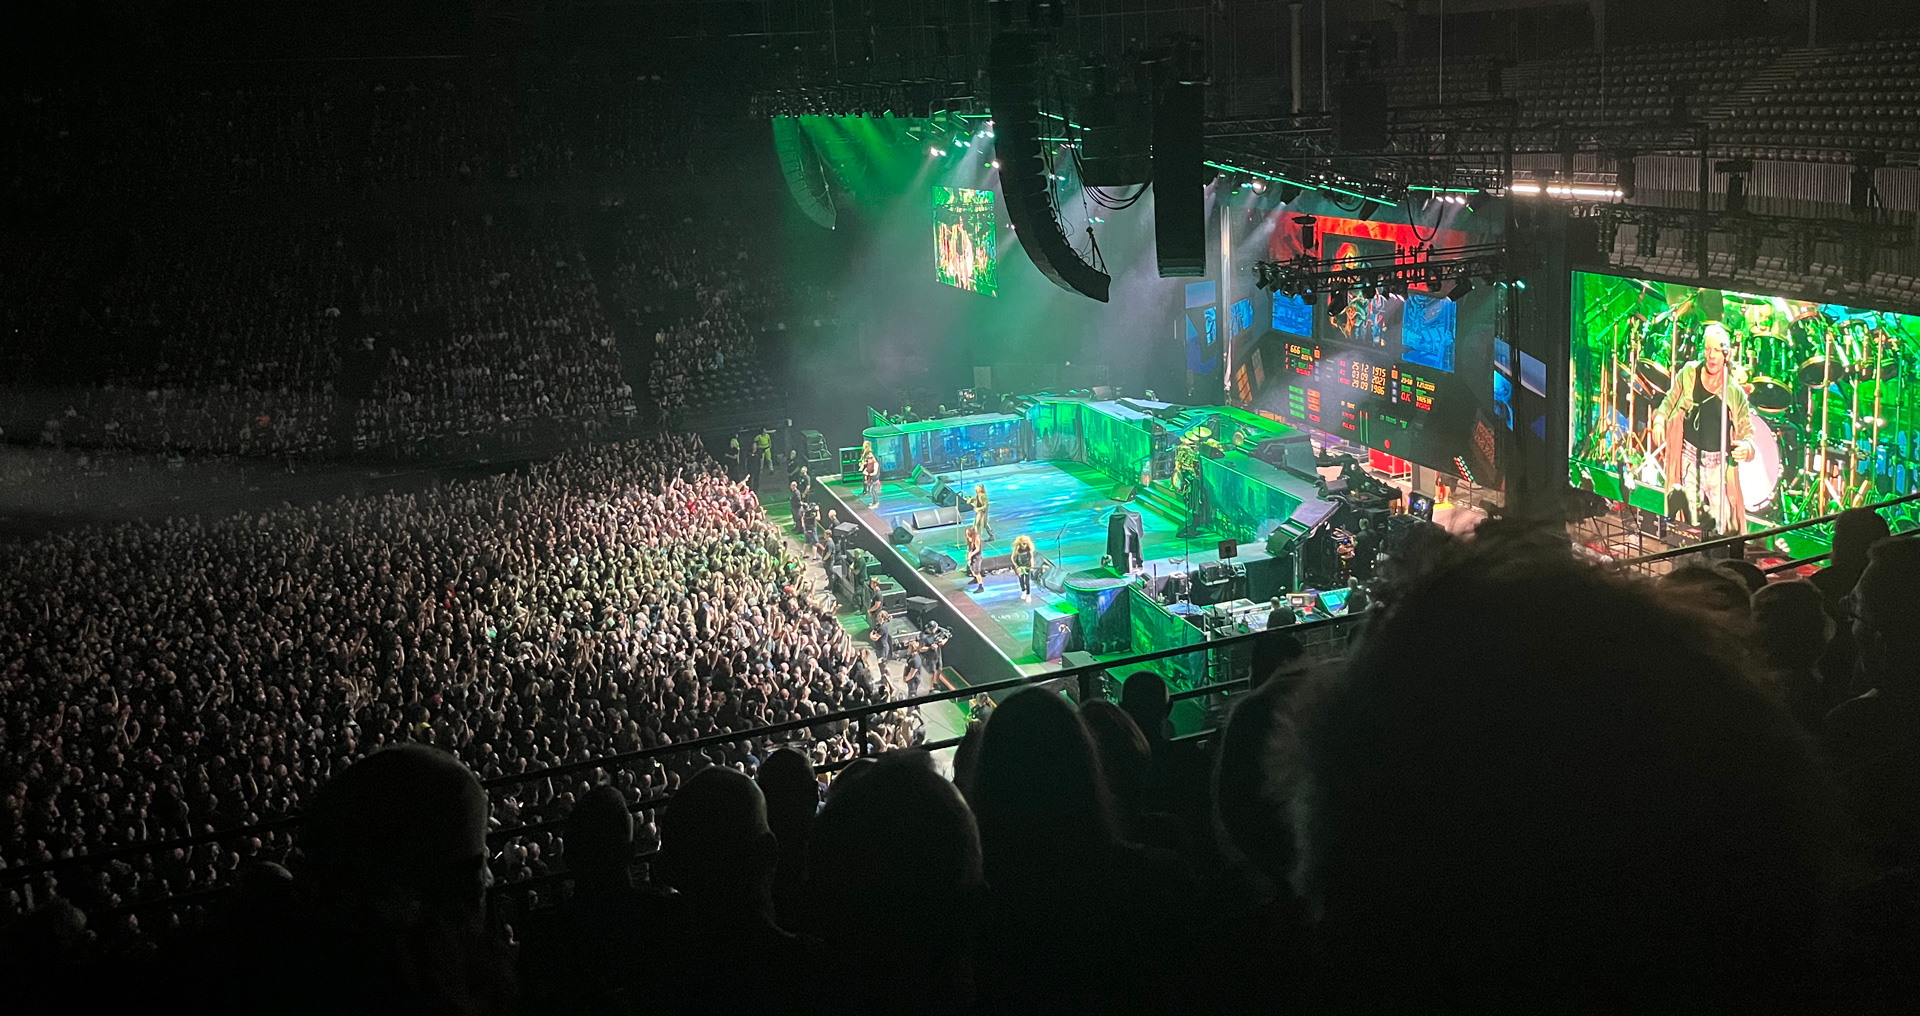 Iron Maiden on stage in Antwerp